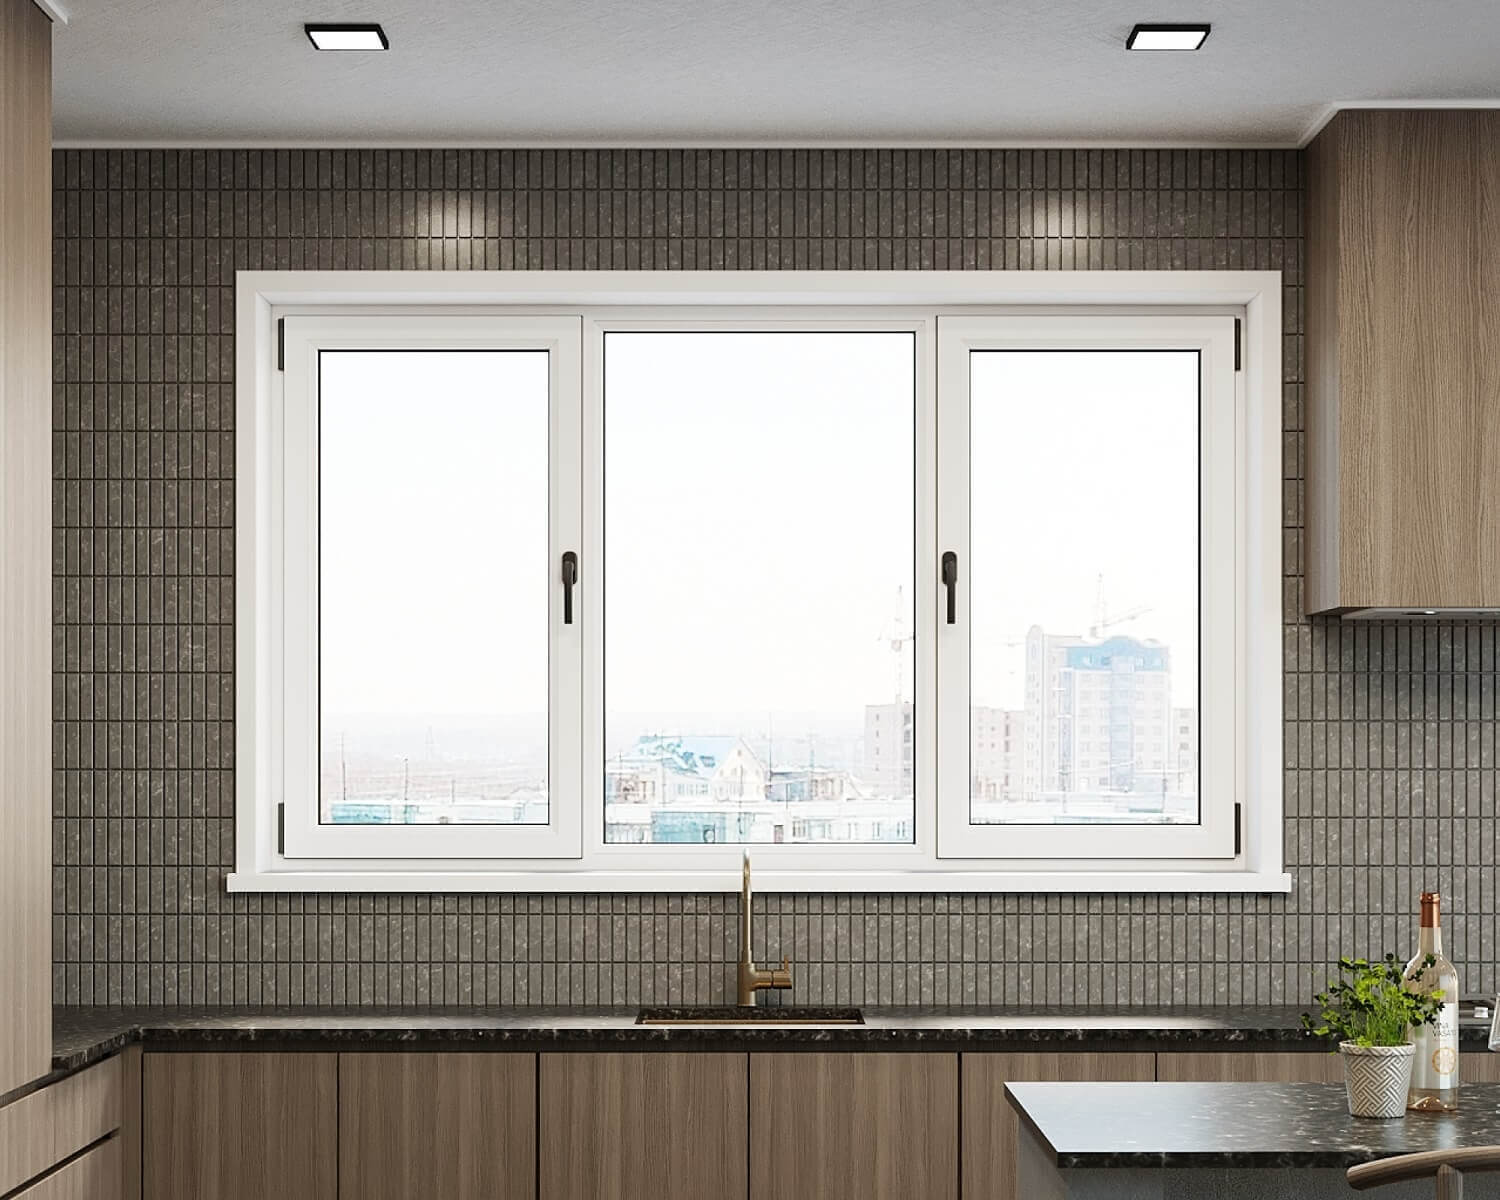 Windows for kitchen